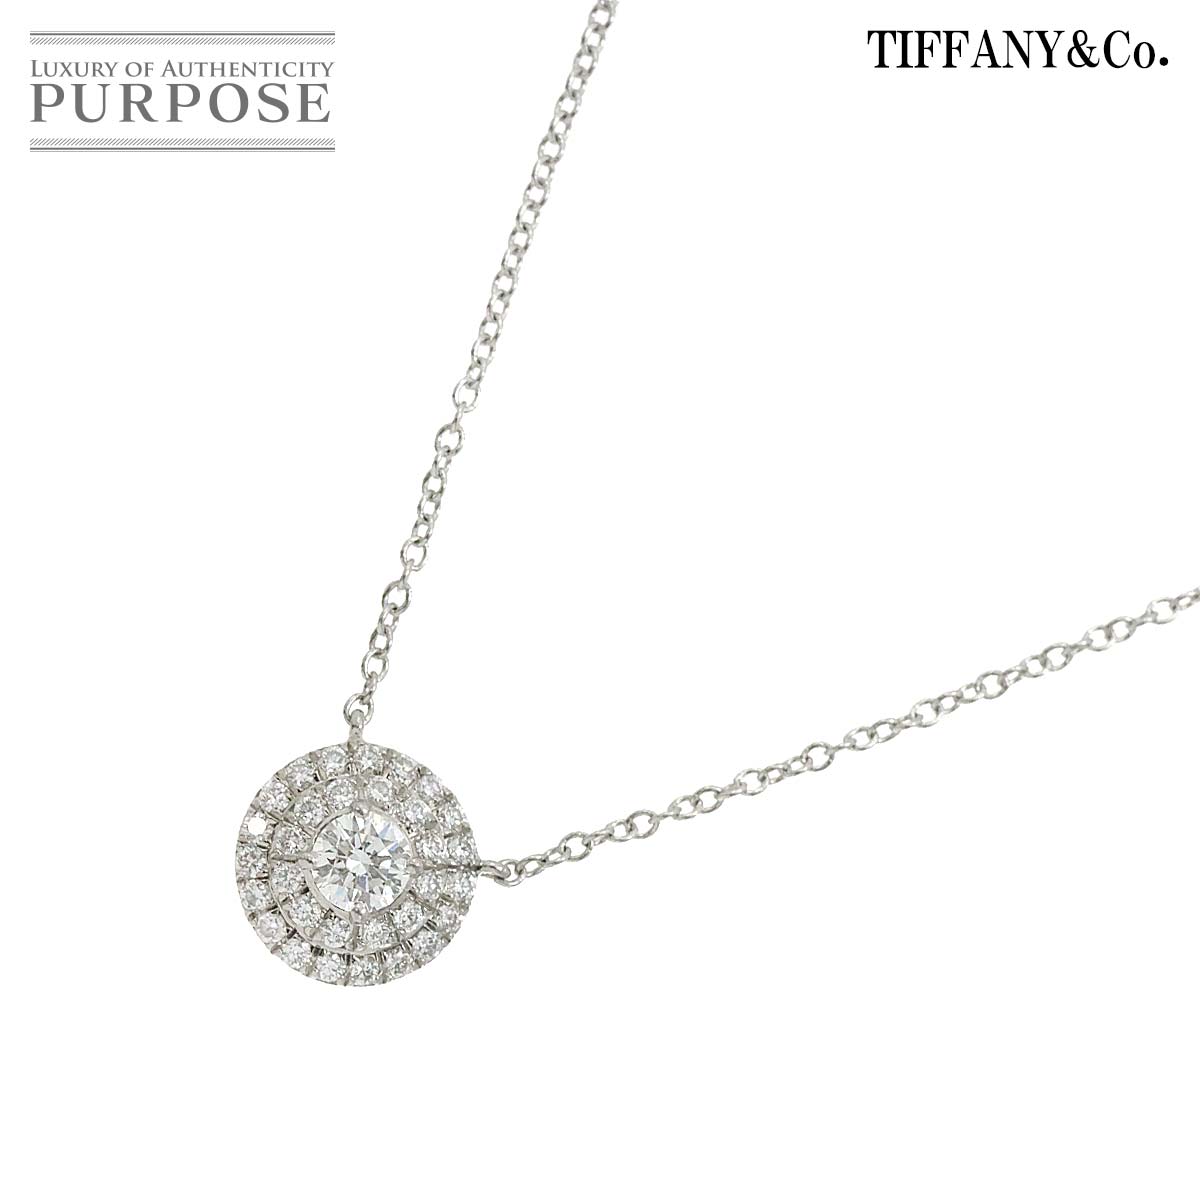 【新品同様】 ティファニー TIFFANY&CO. ソレスト ダイヤ ネックレス 41cm Pt プラチナ Soleste Diamond Necklace【中古】